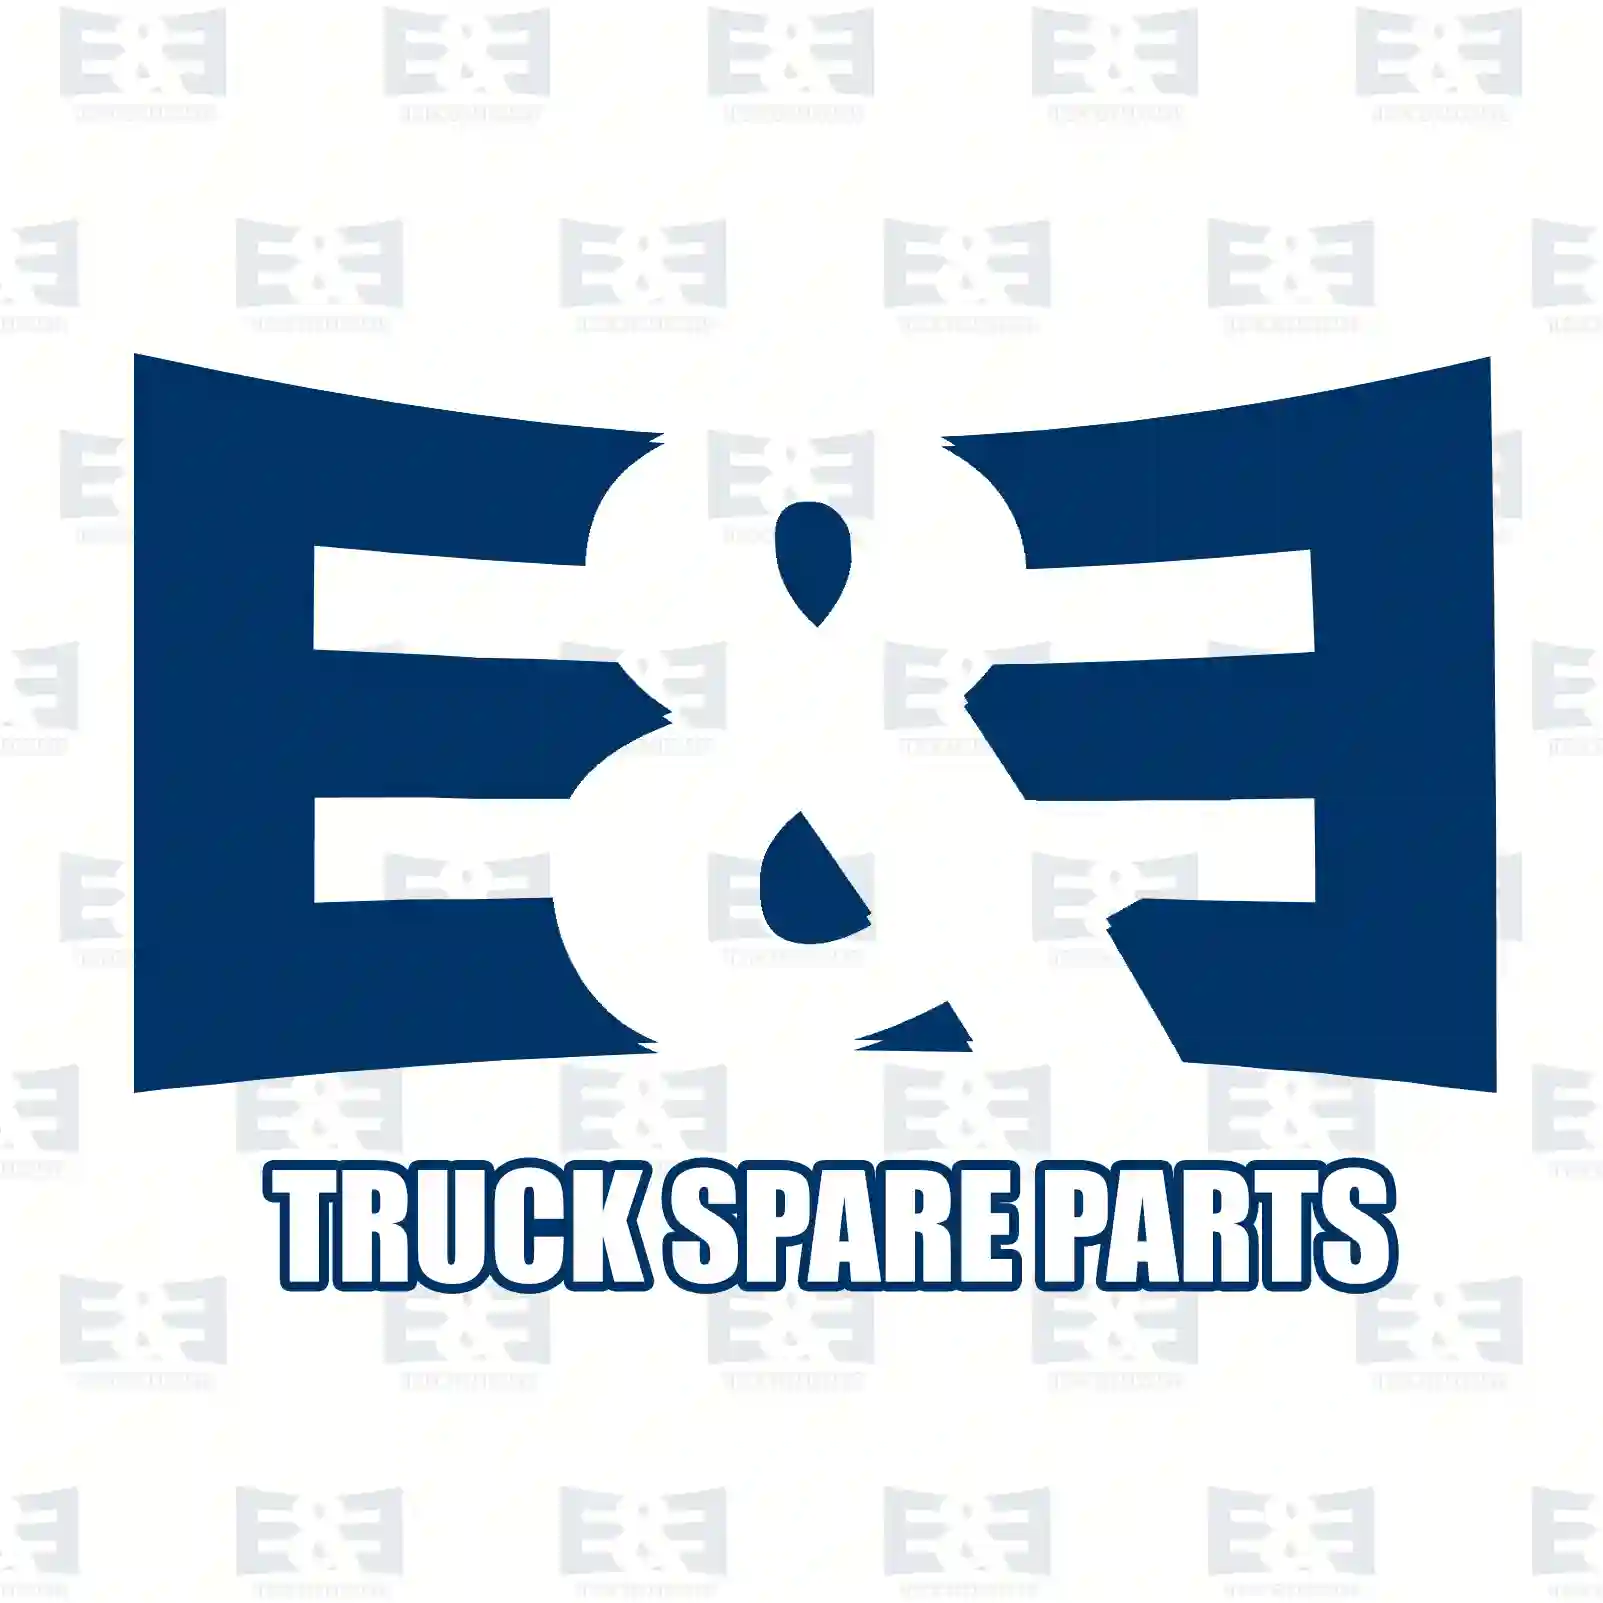 Propeller shaft, 2E2276885, 3894106501, 38941 ||  2E2276885 E&E Truck Spare Parts | Truck Spare Parts, Auotomotive Spare Parts Propeller shaft, 2E2276885, 3894106501, 38941 ||  2E2276885 E&E Truck Spare Parts | Truck Spare Parts, Auotomotive Spare Parts